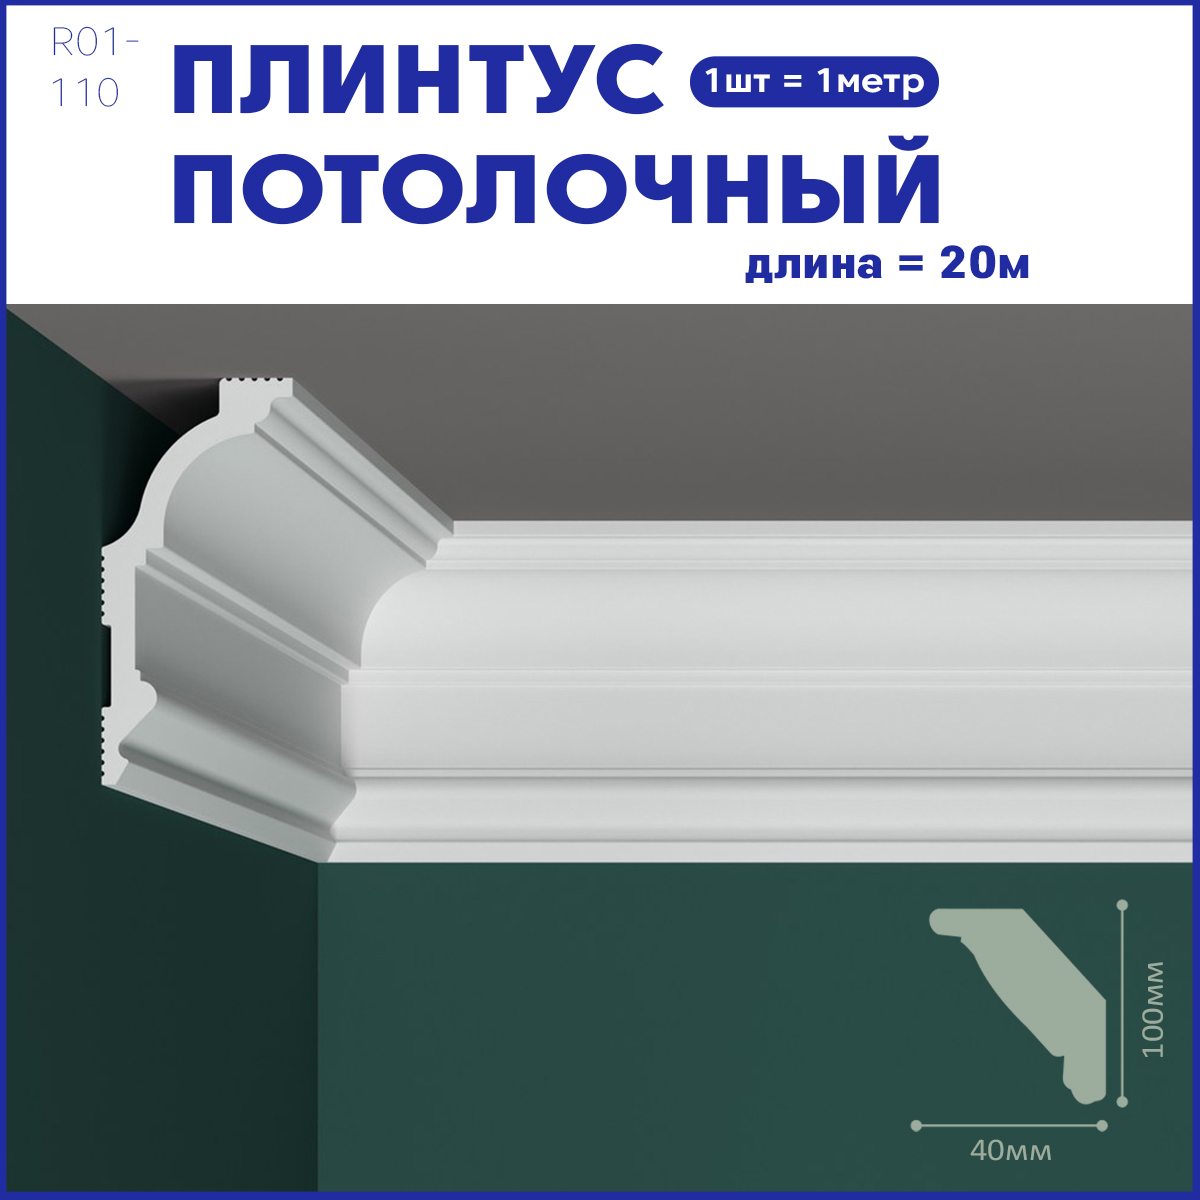 фото Плинтус потолочный r01-110, комплект 20 шт. x 1м, 20м nobrand